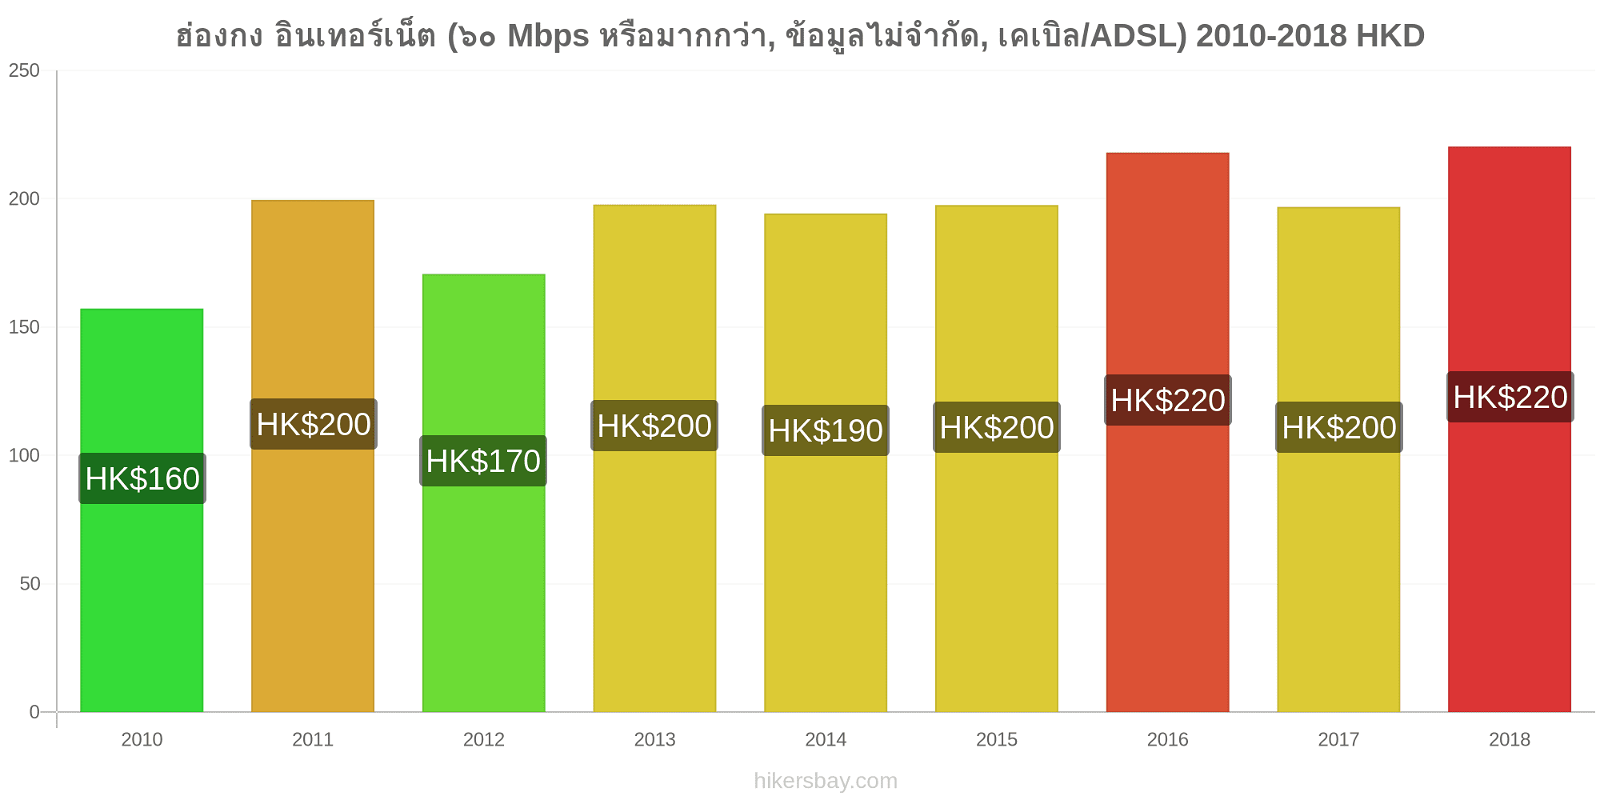 ฮ่องกง การเปลี่ยนแปลงราคา อินเทอร์เน็ต (60 Mbps หรือมากกว่า, ข้อมูลไม่จำกัด, เคเบิล/ADSL) hikersbay.com